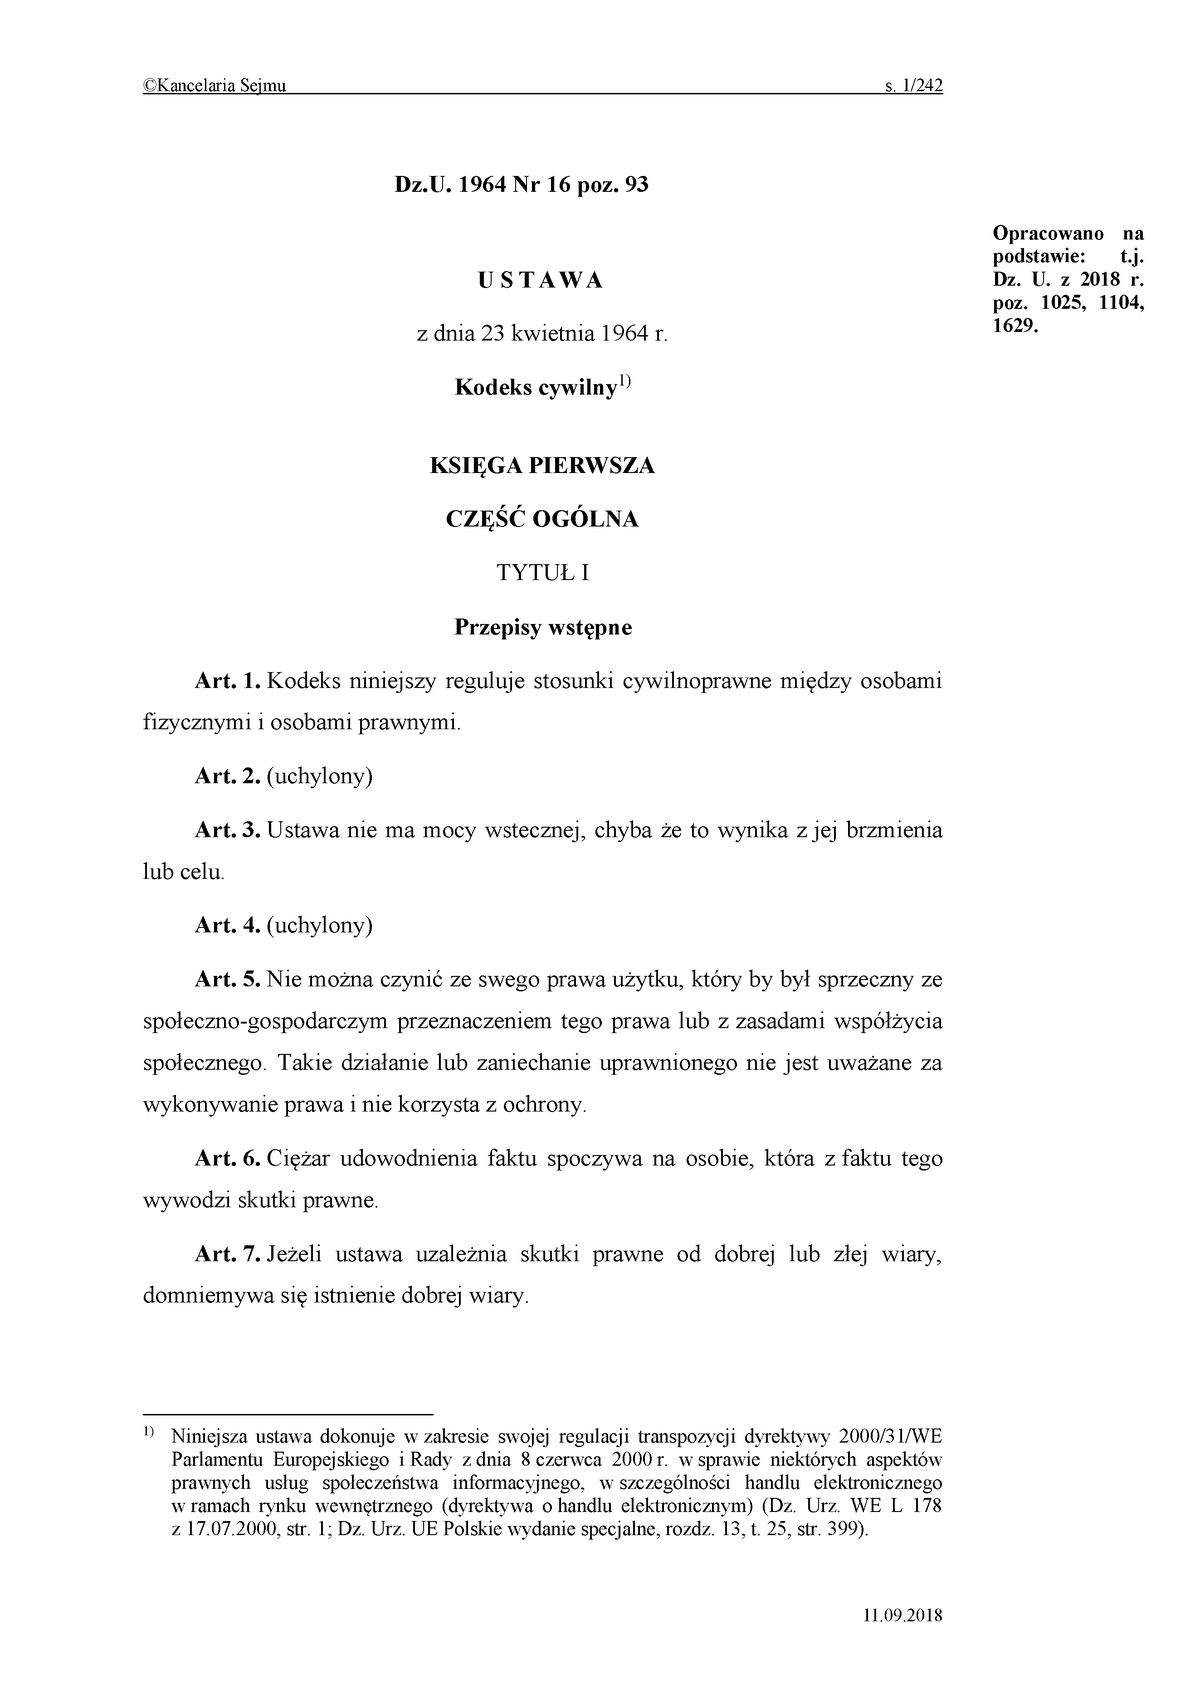 Kodeks Pracy Kancelaria Sejmu Dokument W Wordzie